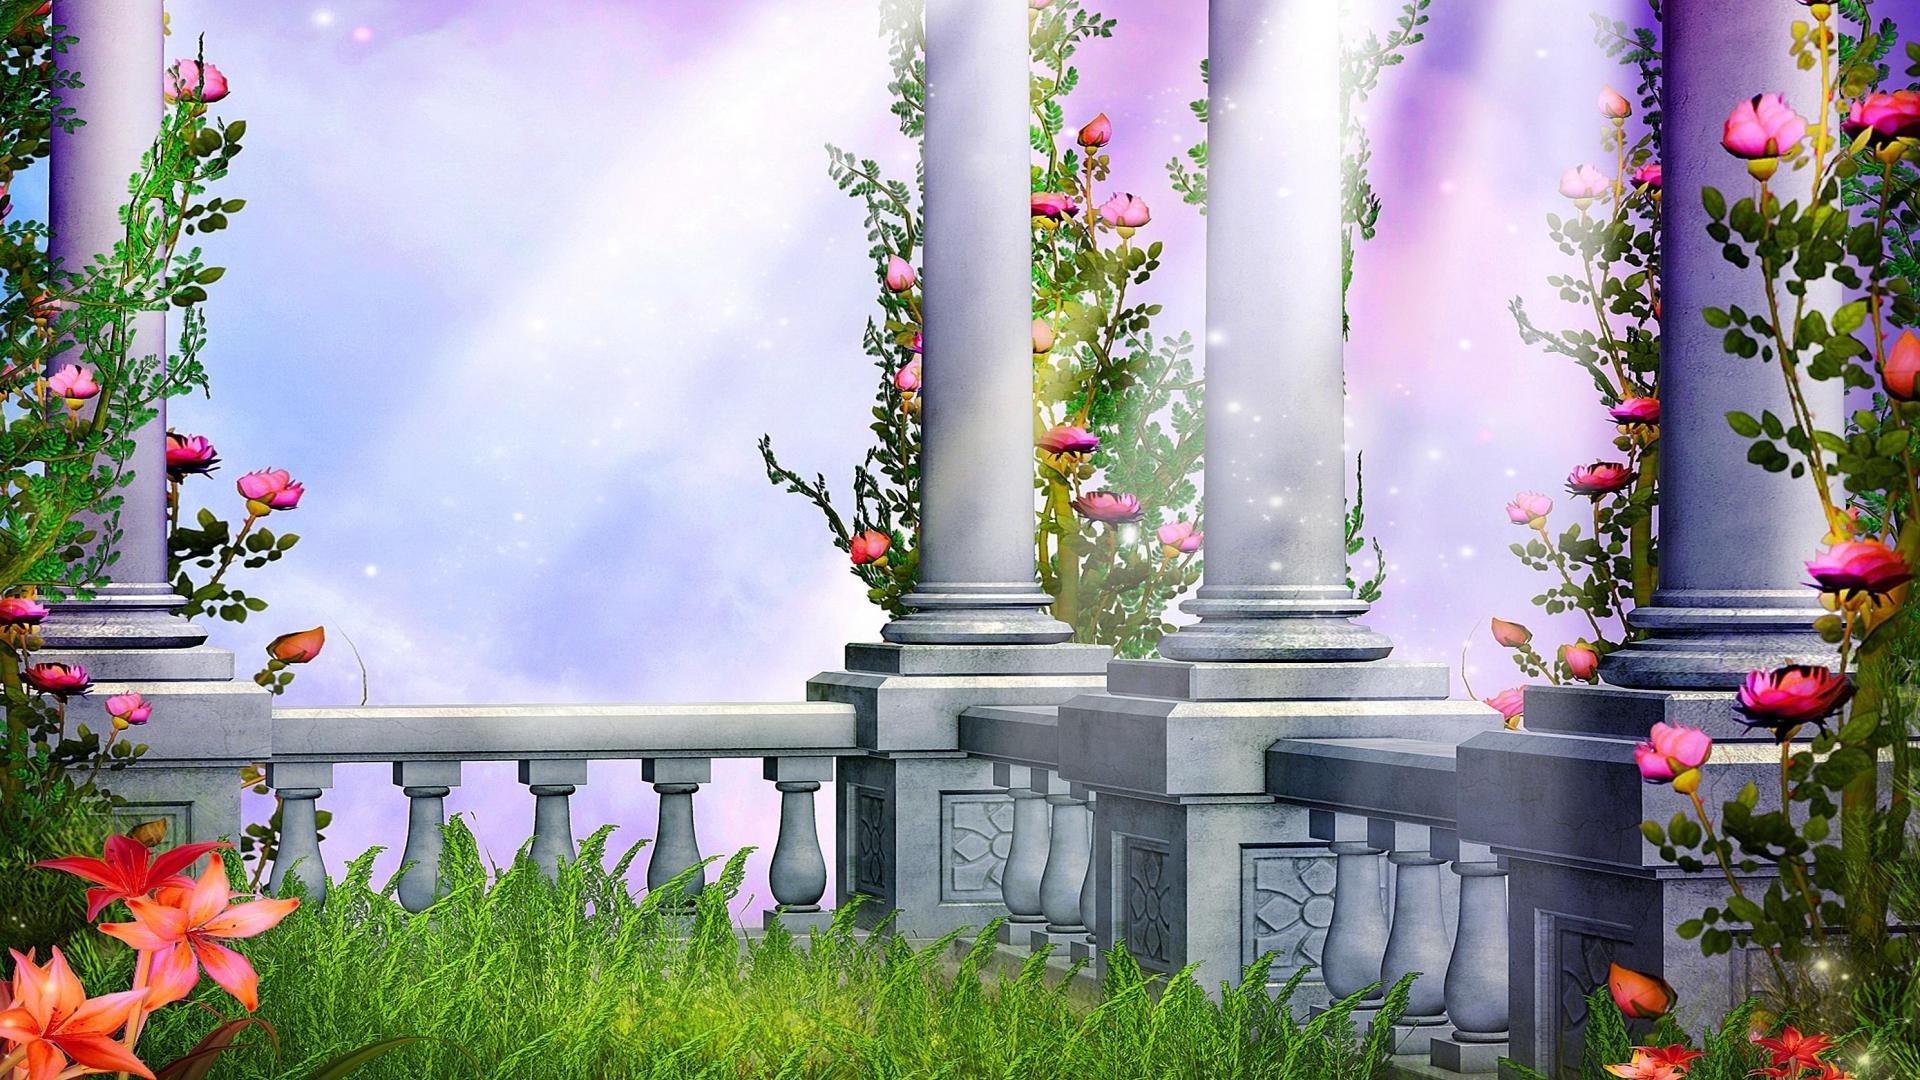 Garden Fantasy Background - HD Wallpaper 